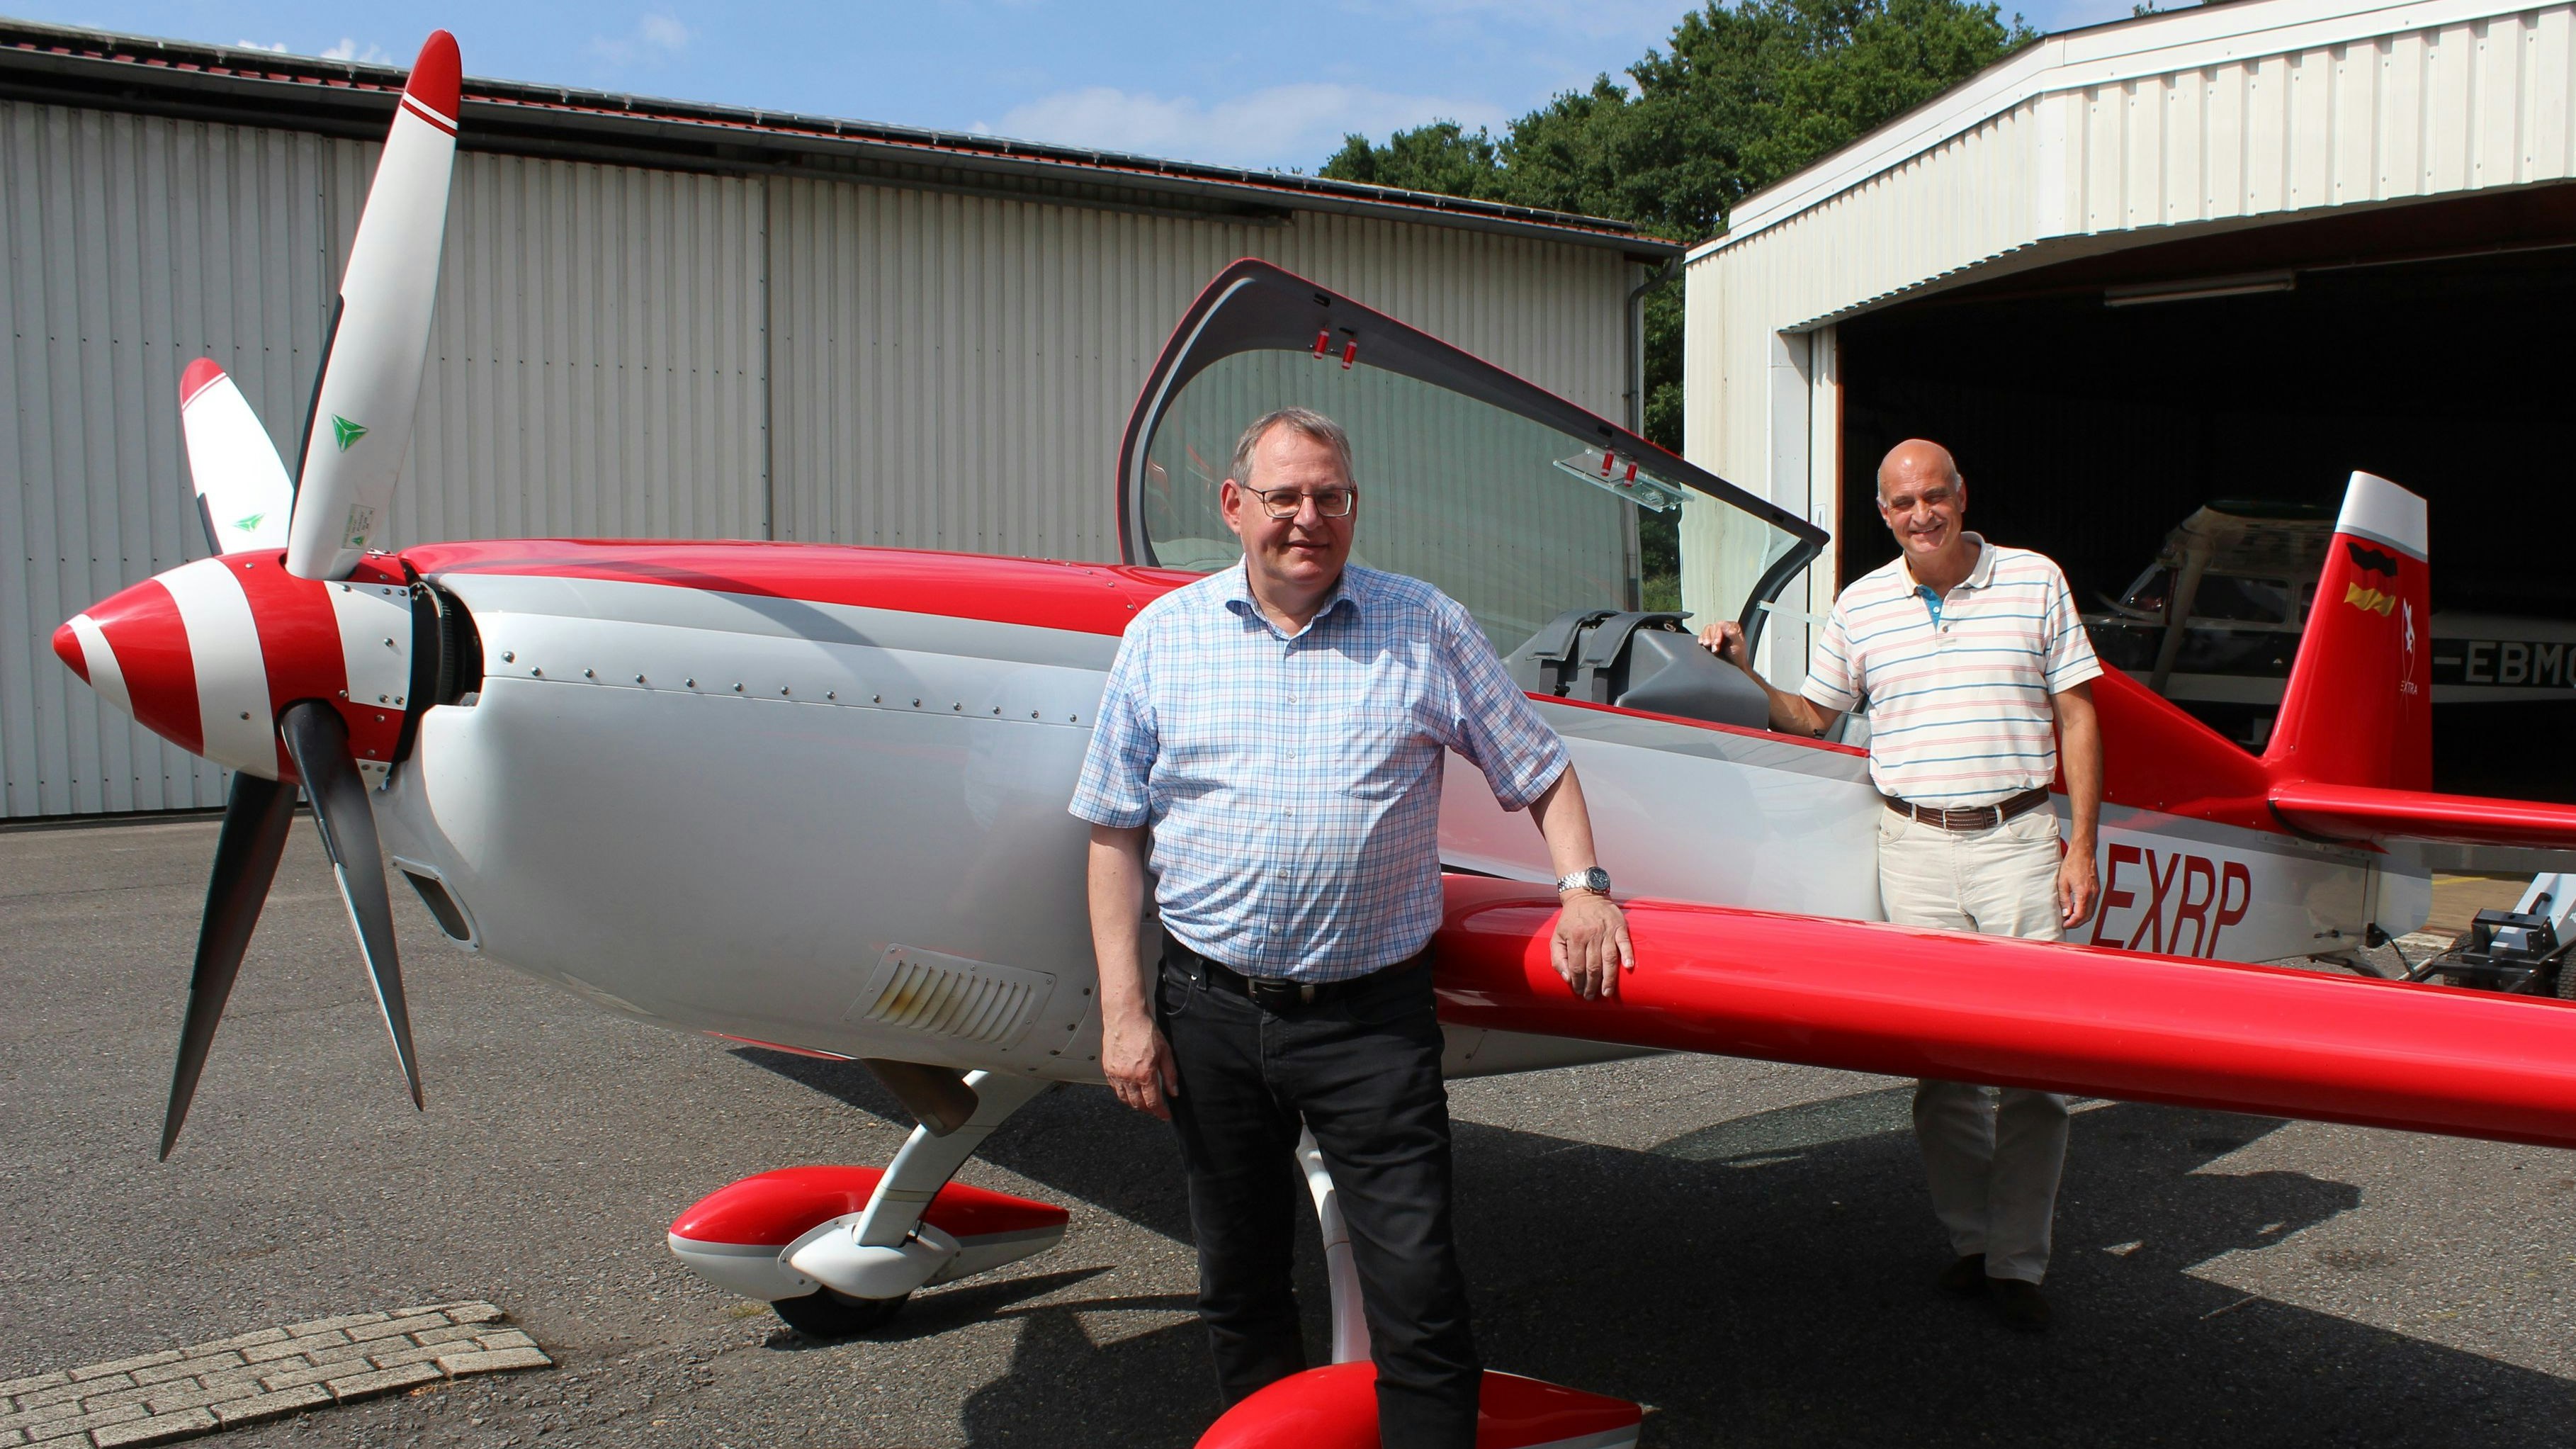 Sie gehen gerne in die Luft: Markus Graw (links) und Uwe Krabbe freuen sich auf den "Erlebnistag Fliegen" des Aero-Clubs Damme am 10. September und hoffen auf viele interessierte Teilnehmer. Foto: Heinzel